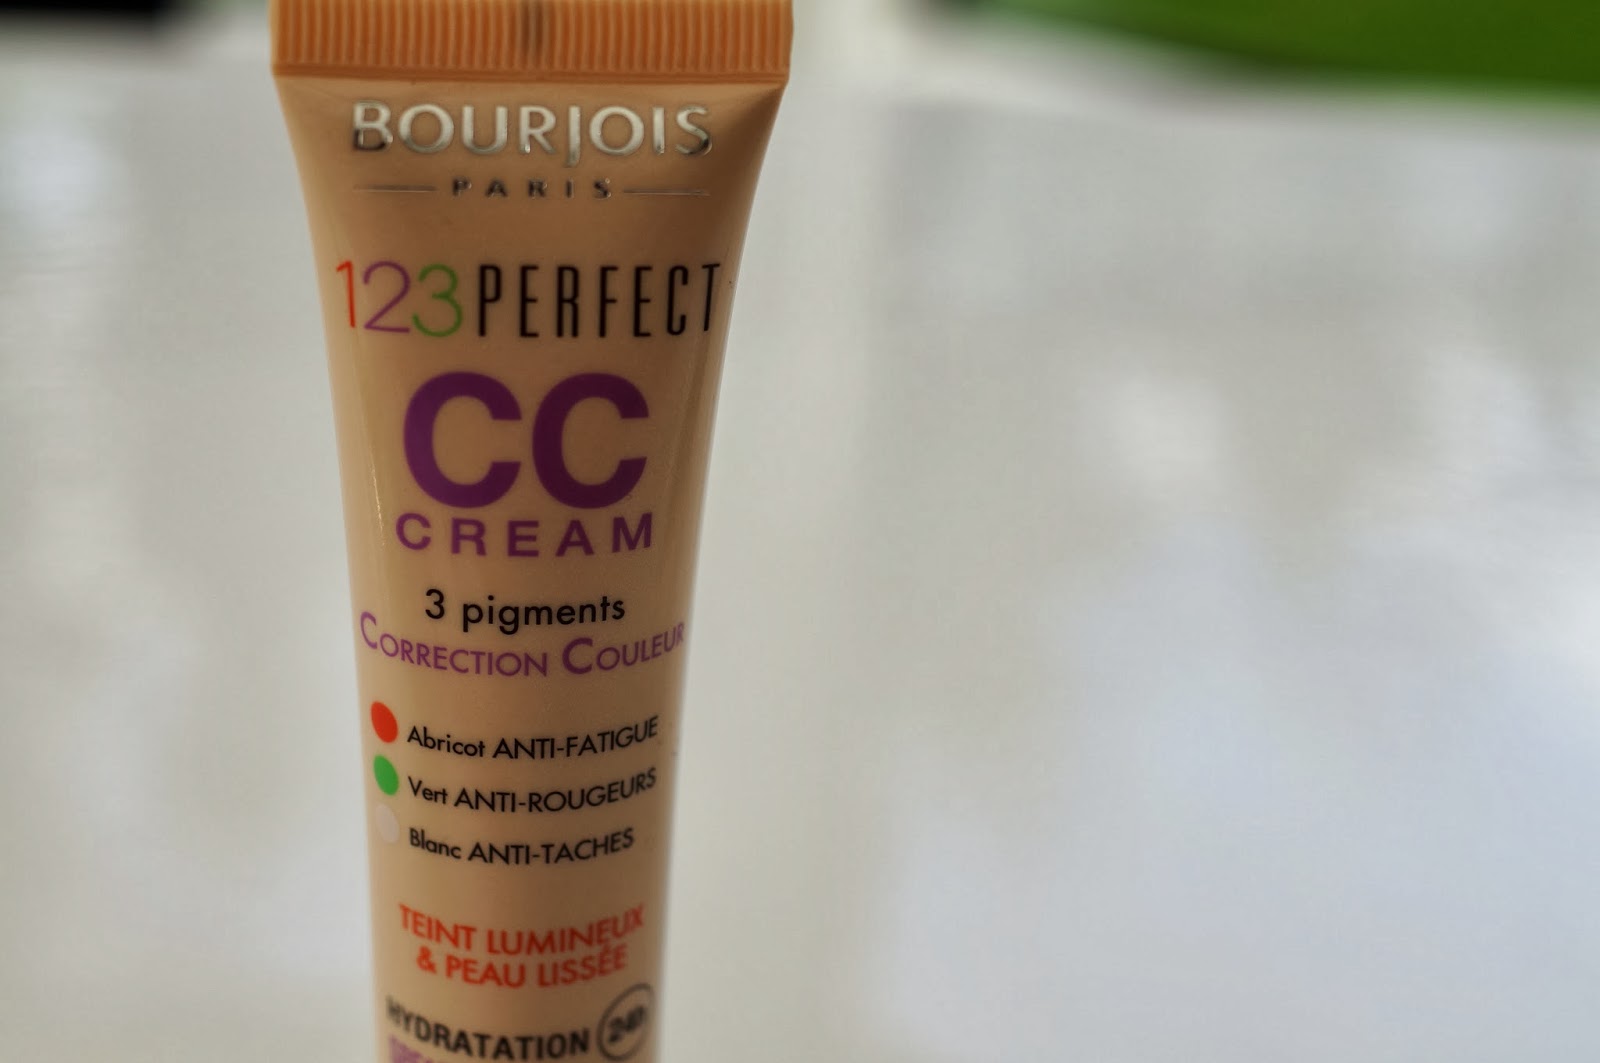 Bourjois 123 Perfect CC Cream 